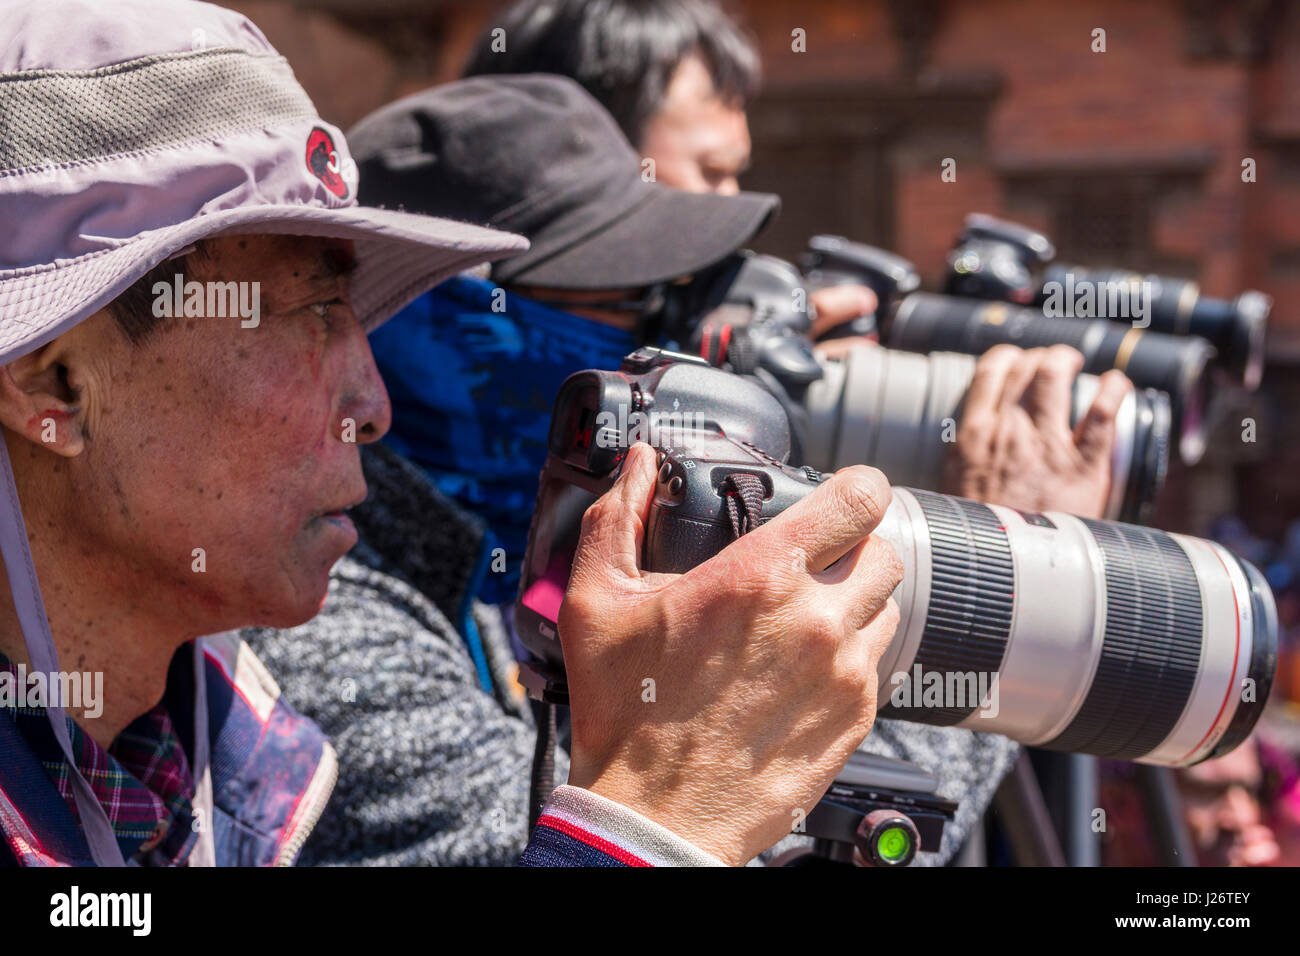 Les touristes chinois sont de prendre des photographies de milliers de jeunes, les bavures et en jouant avec la couleur, la célébration du festival holi Banque D'Images